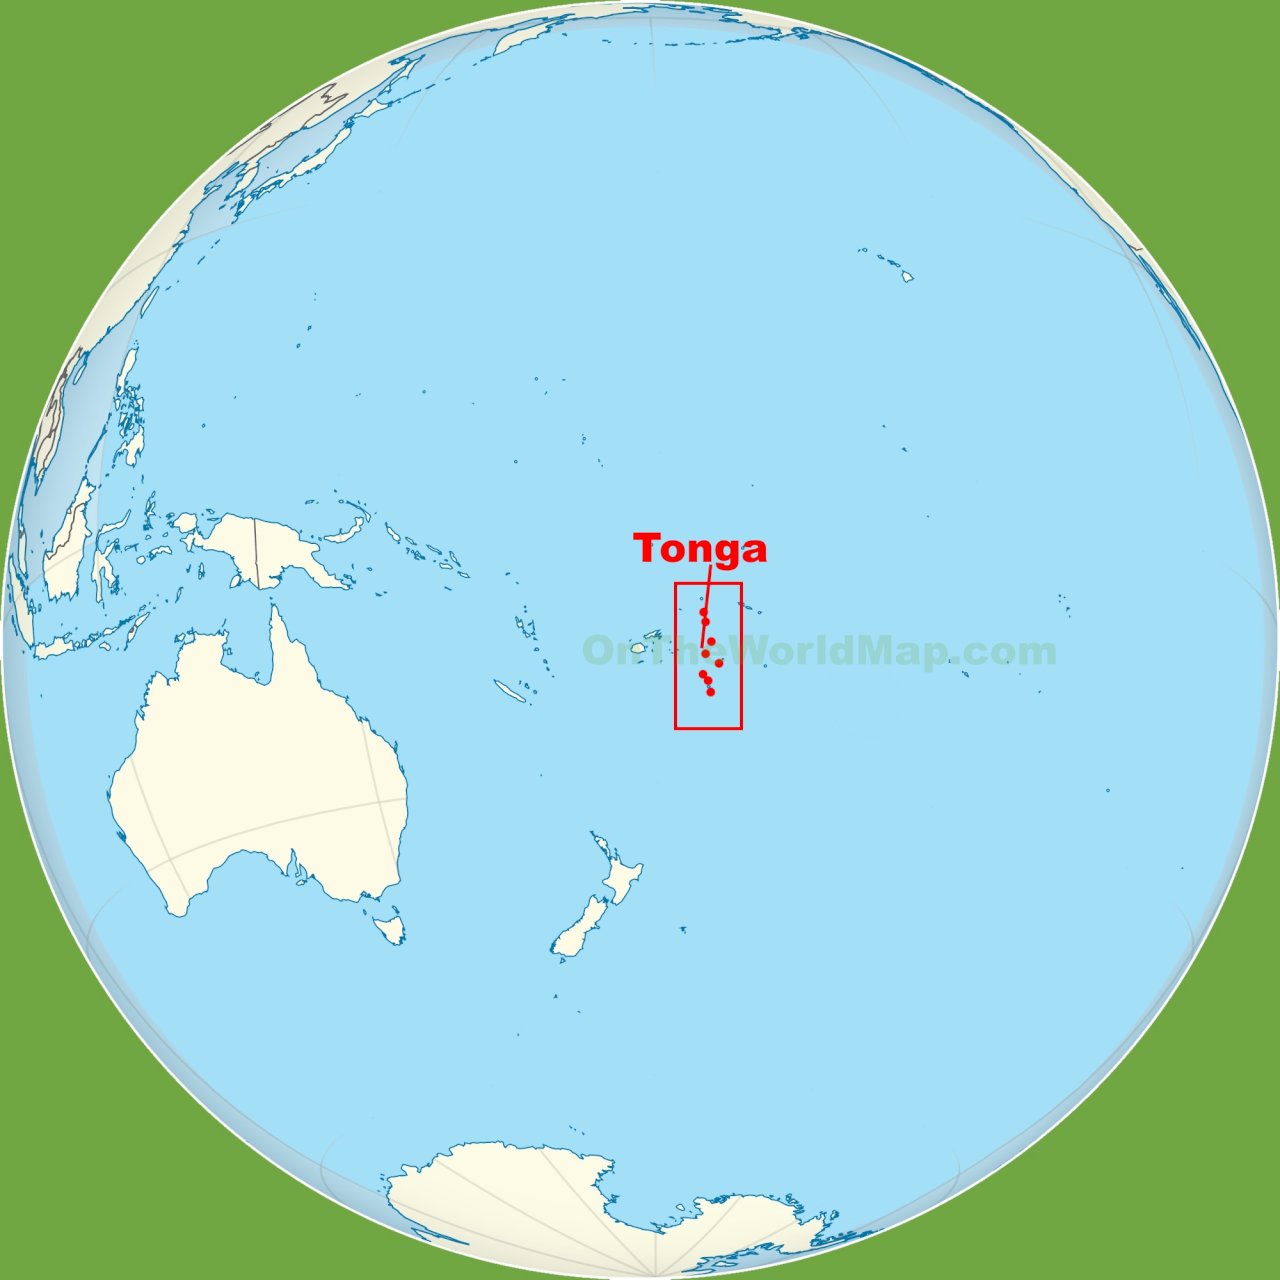 太平洋島國東加王國。(圖/ontheworldmap.com)